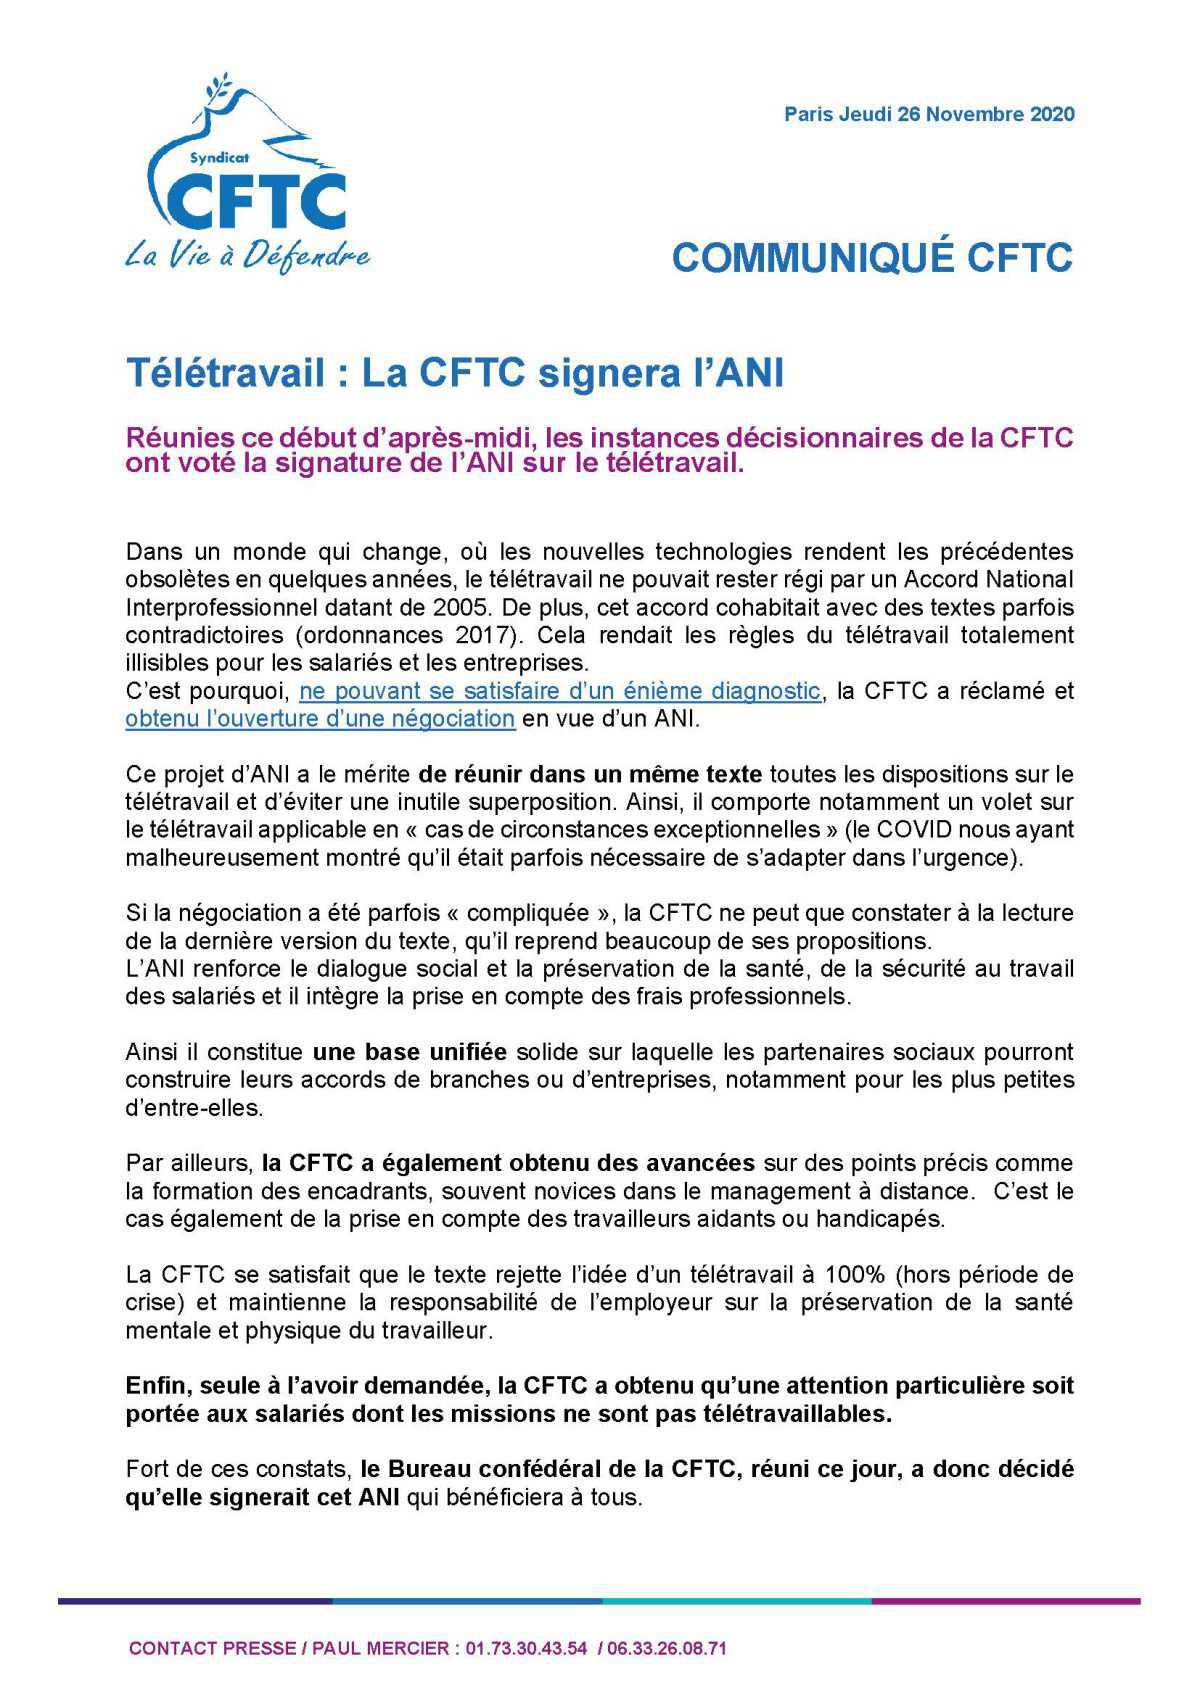 La CFTC signera l'ANI sur le Télétravail